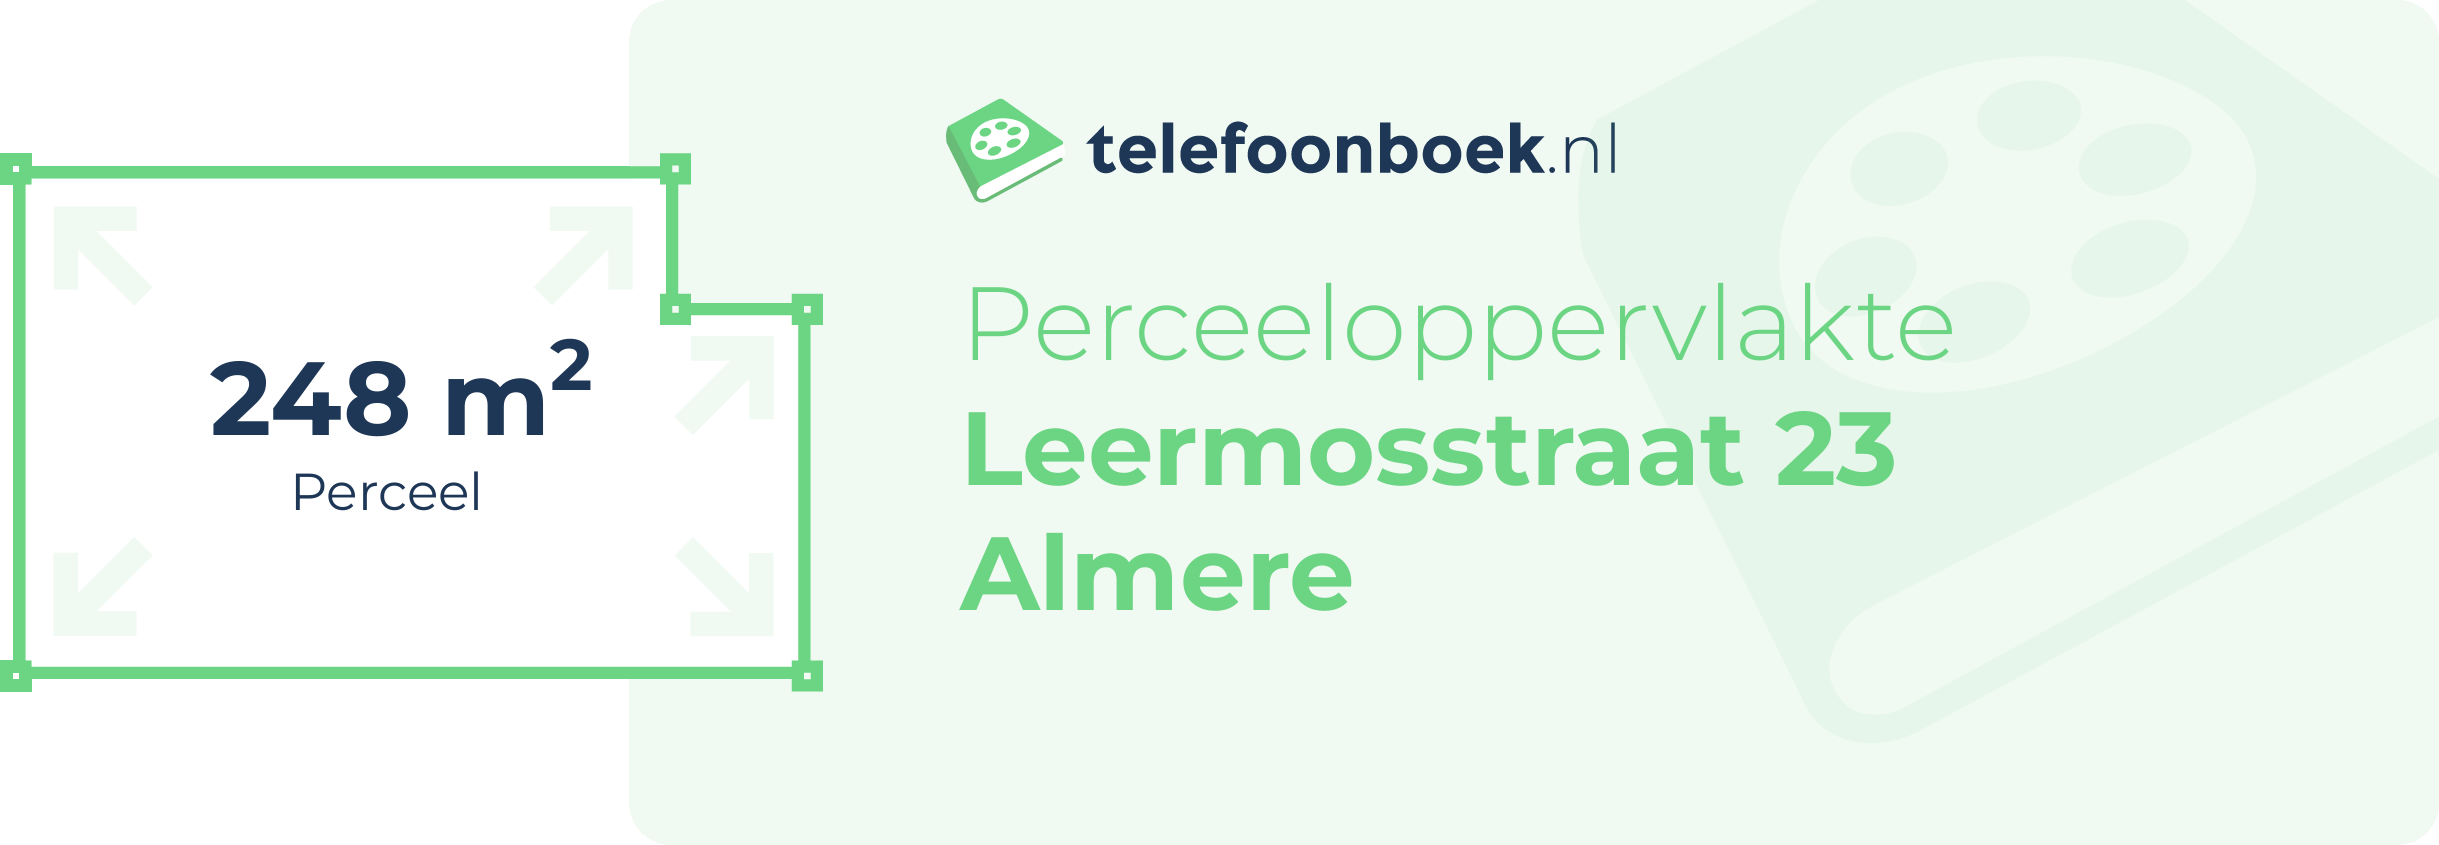 Perceeloppervlakte Leermosstraat 23 Almere